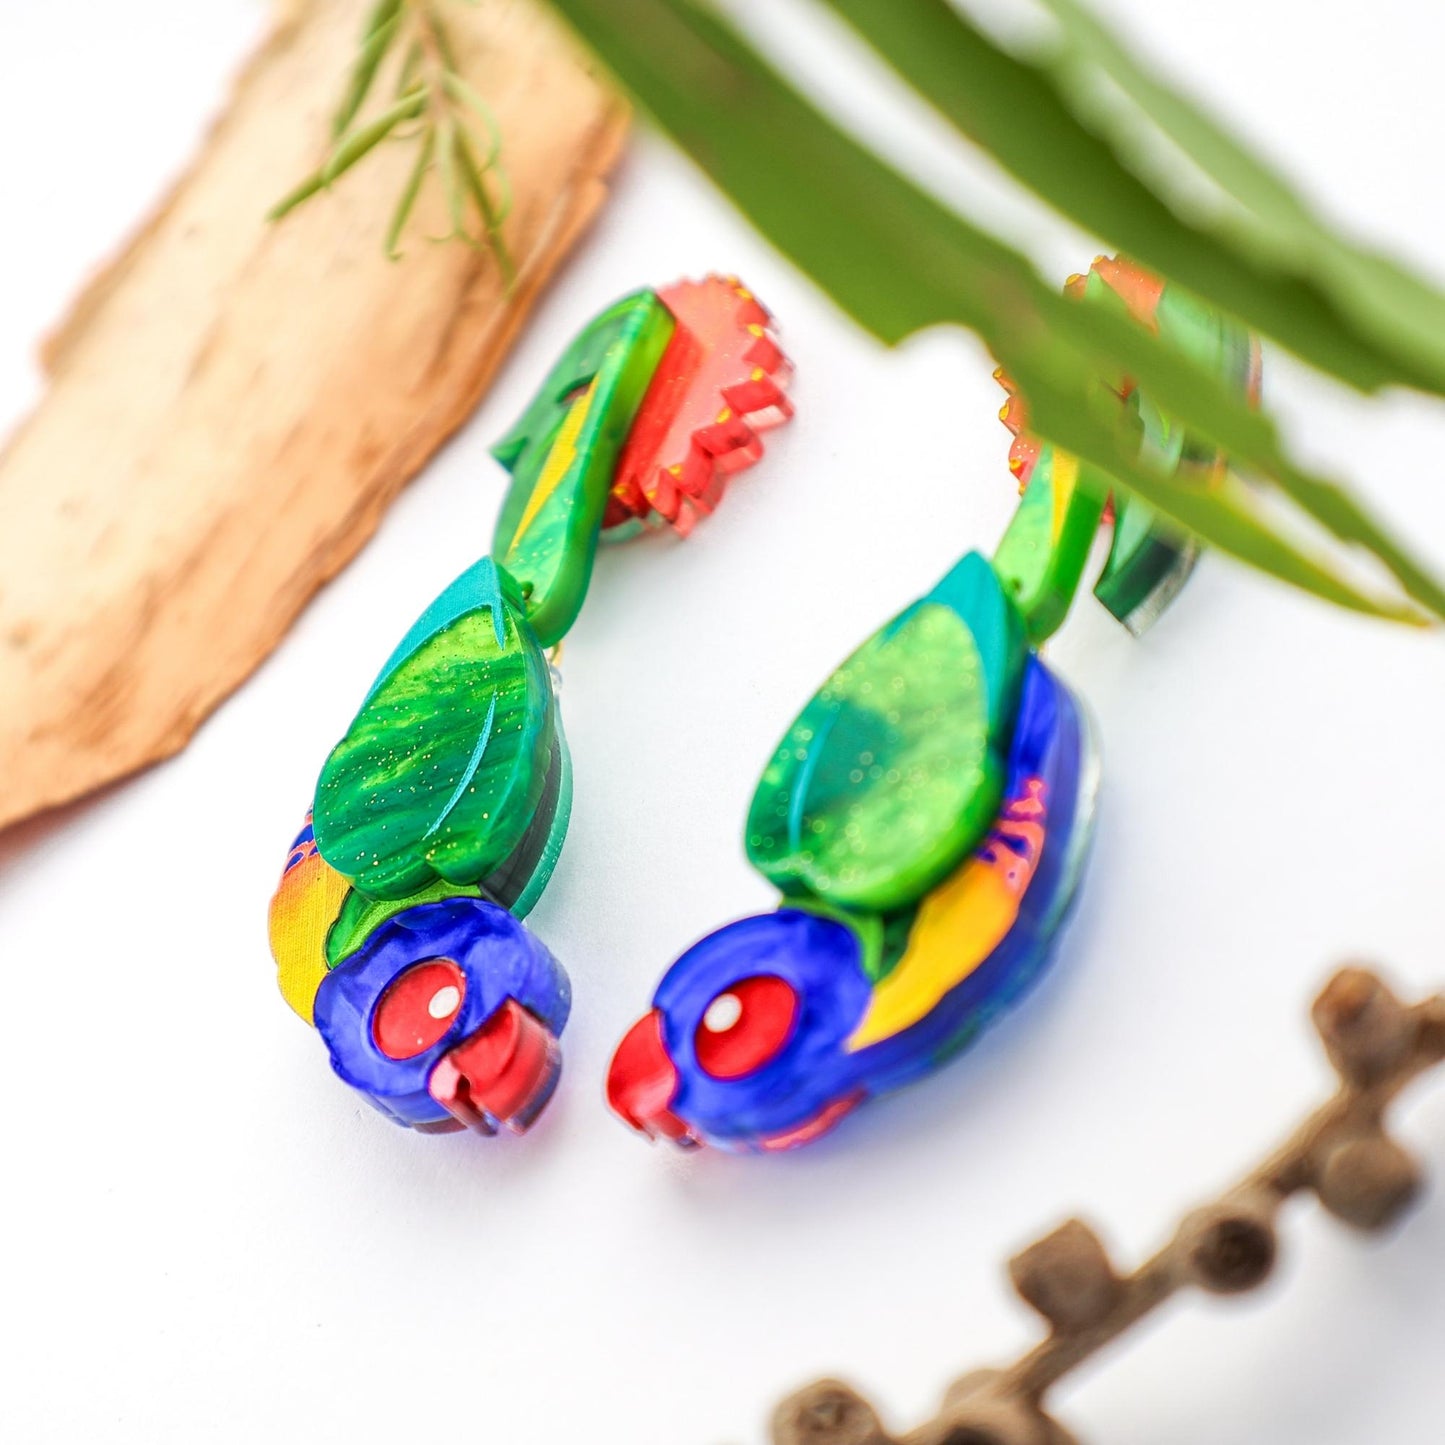 Rainbow Lorikeet Earrings - Statement Bird Earrings